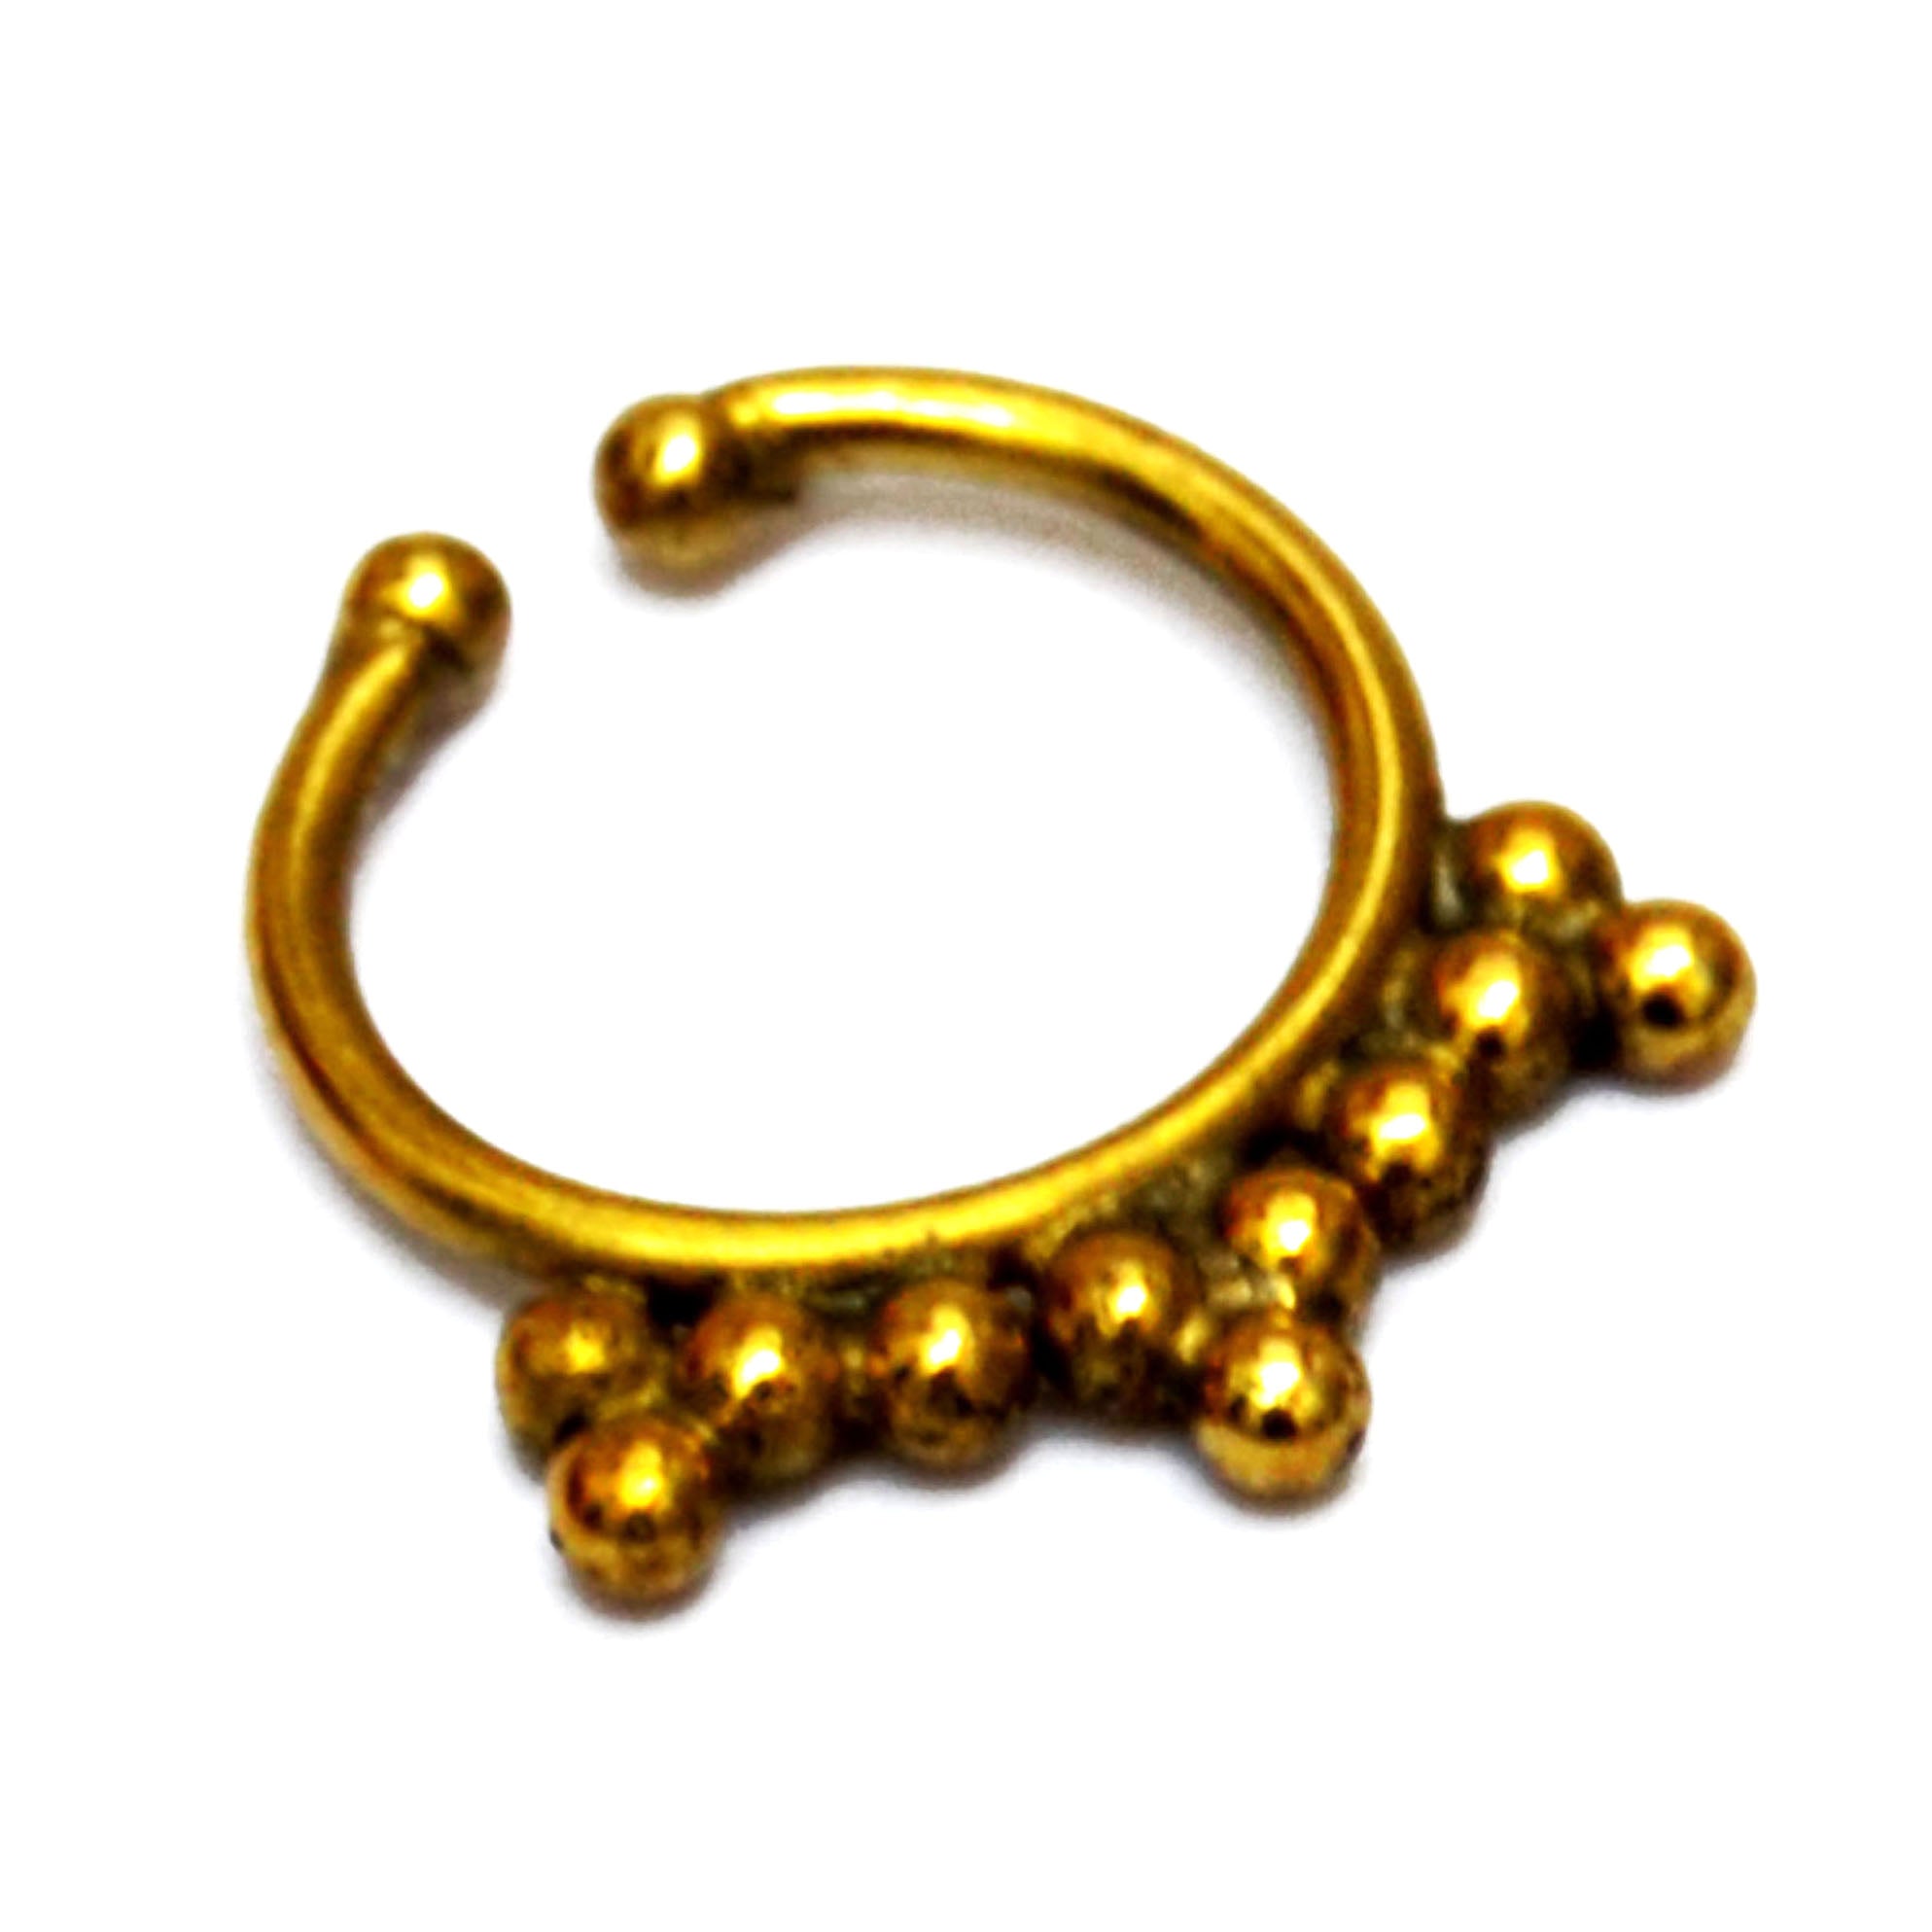 Fake gold nose ring